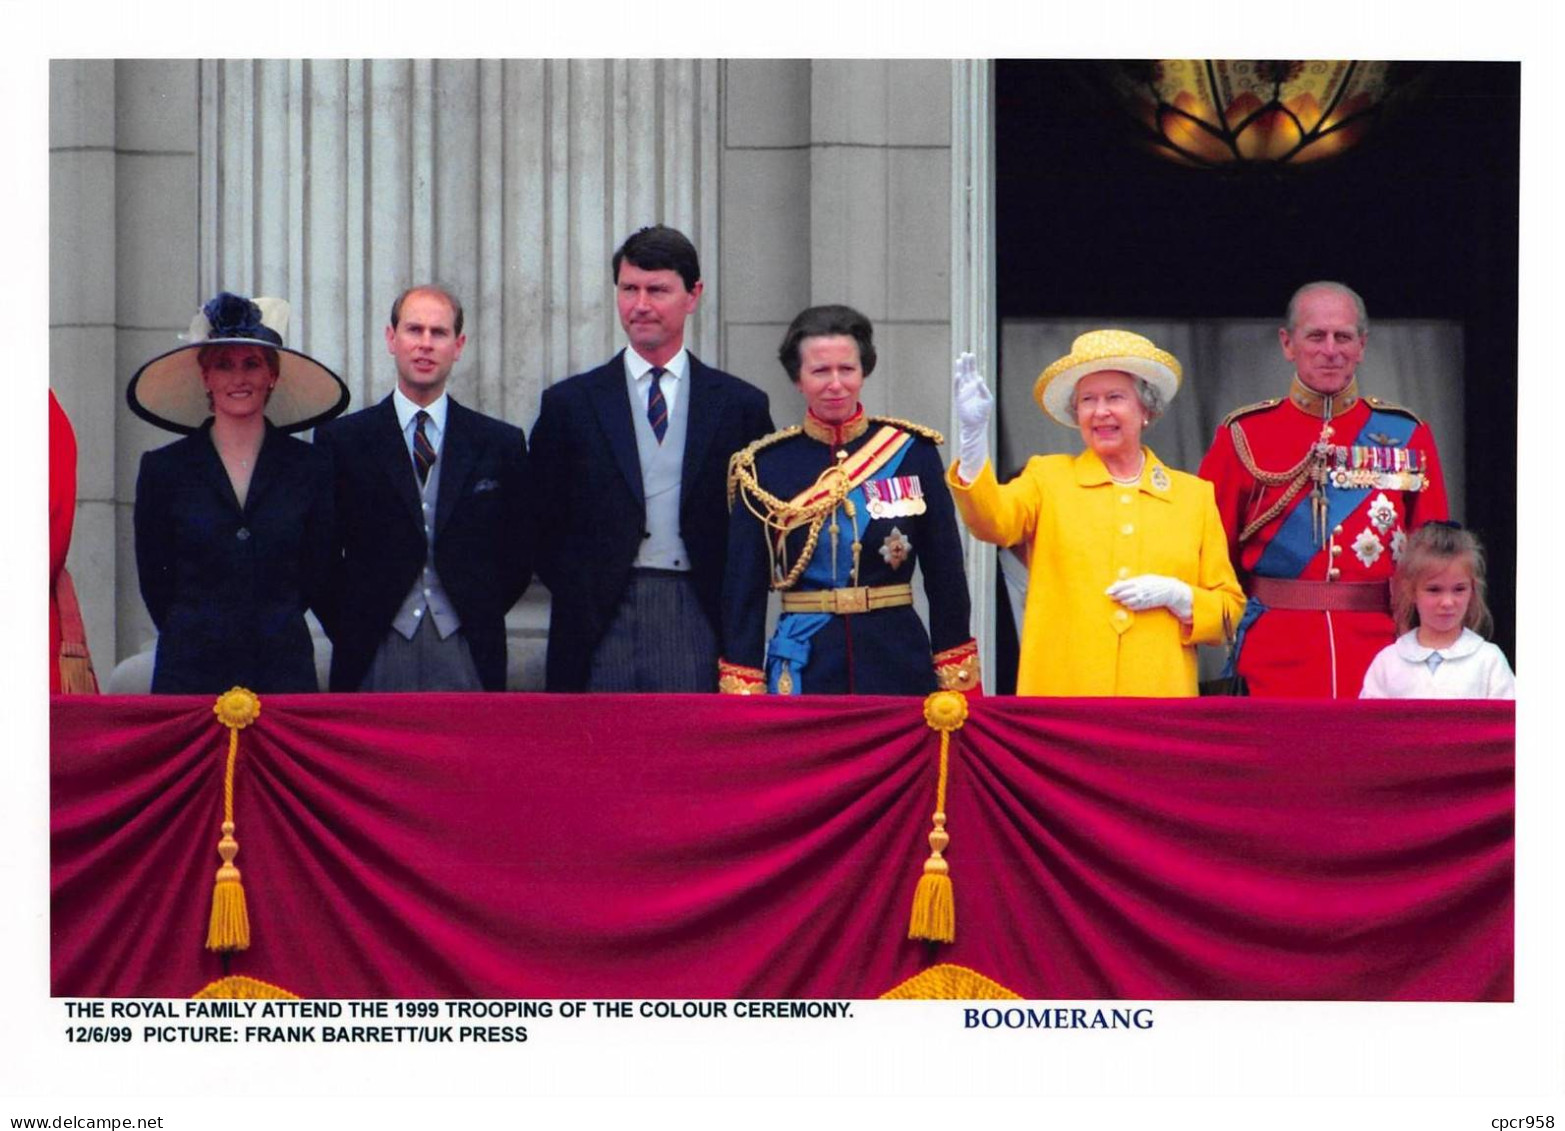 Photo De Presse.MLE10638.30x20 Cm Environ.1998.Famille Royale.Buckingham Palace.Balcon.Colour Ceremony - Berühmtheiten